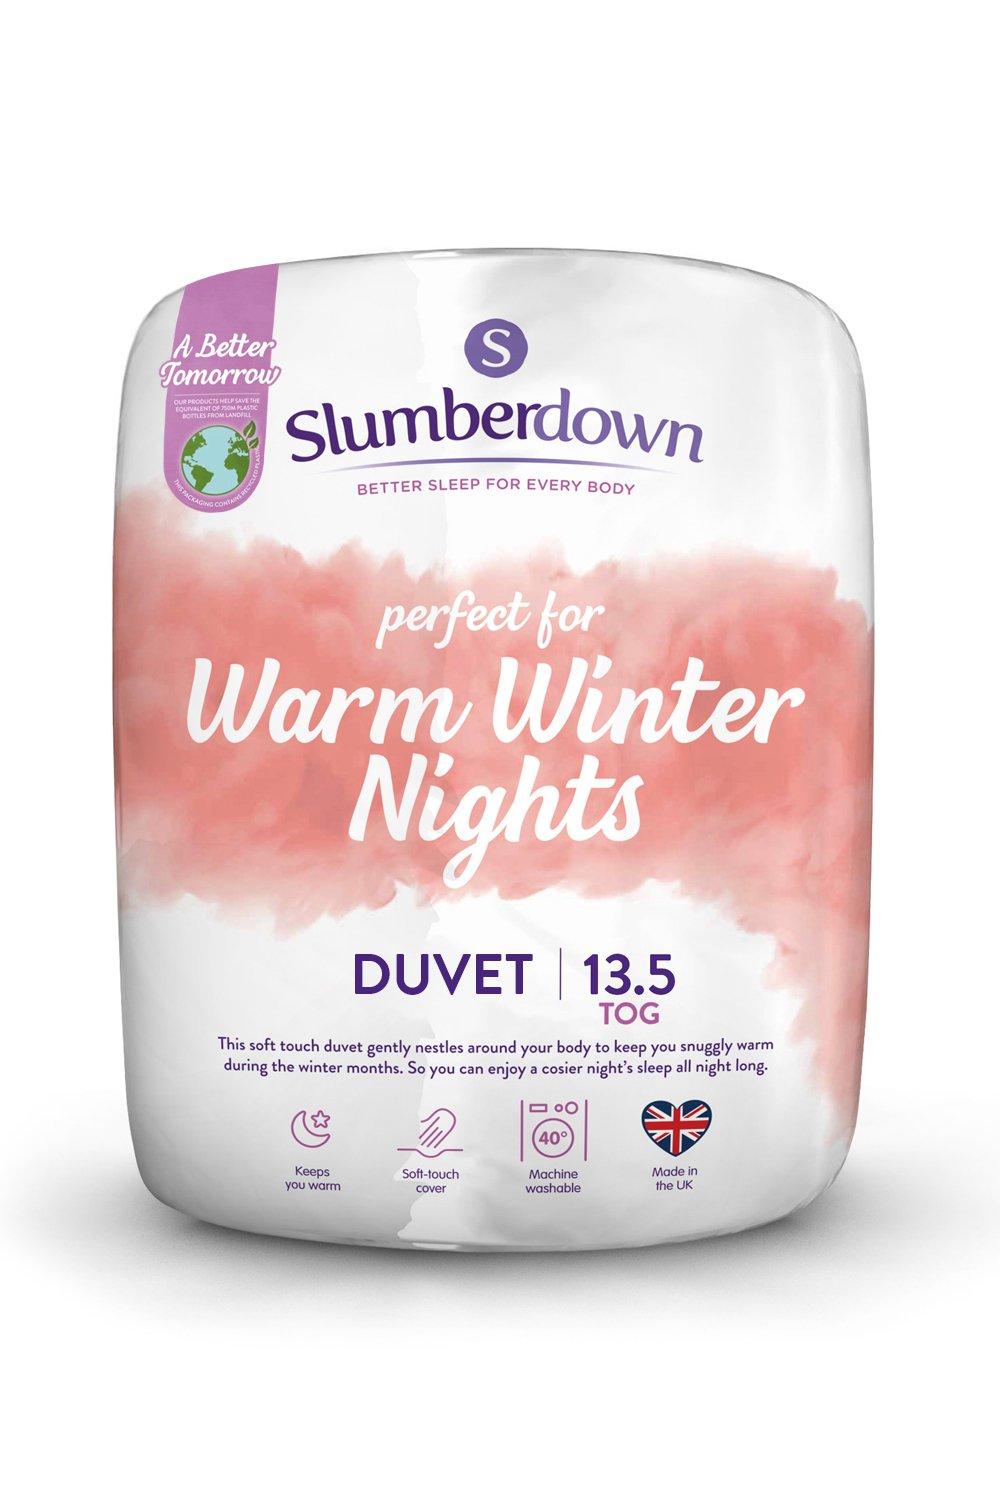 Warm Winter Nights 13.5 Tog Winter Duvet